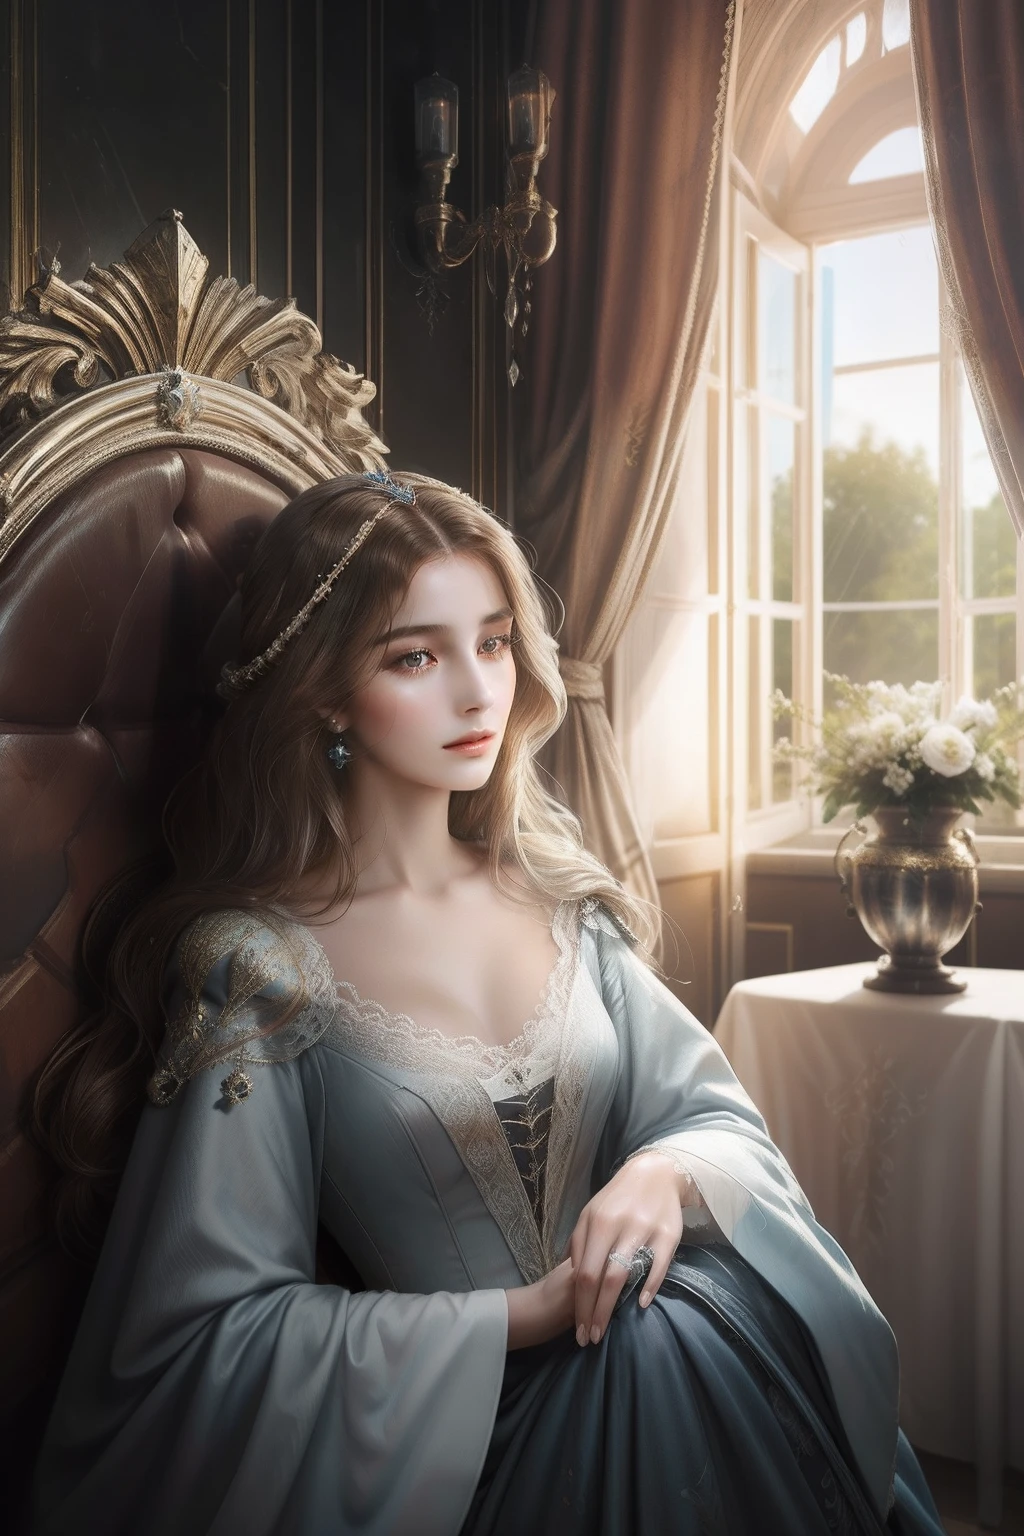 中世の美しいフランスの貴婦人, 長い黒髪, 魅惑的な青い目, 官能的な体, 最高の官能性, 豪華な部屋で寝間着を着る, ウェットティッシュで体を拭く